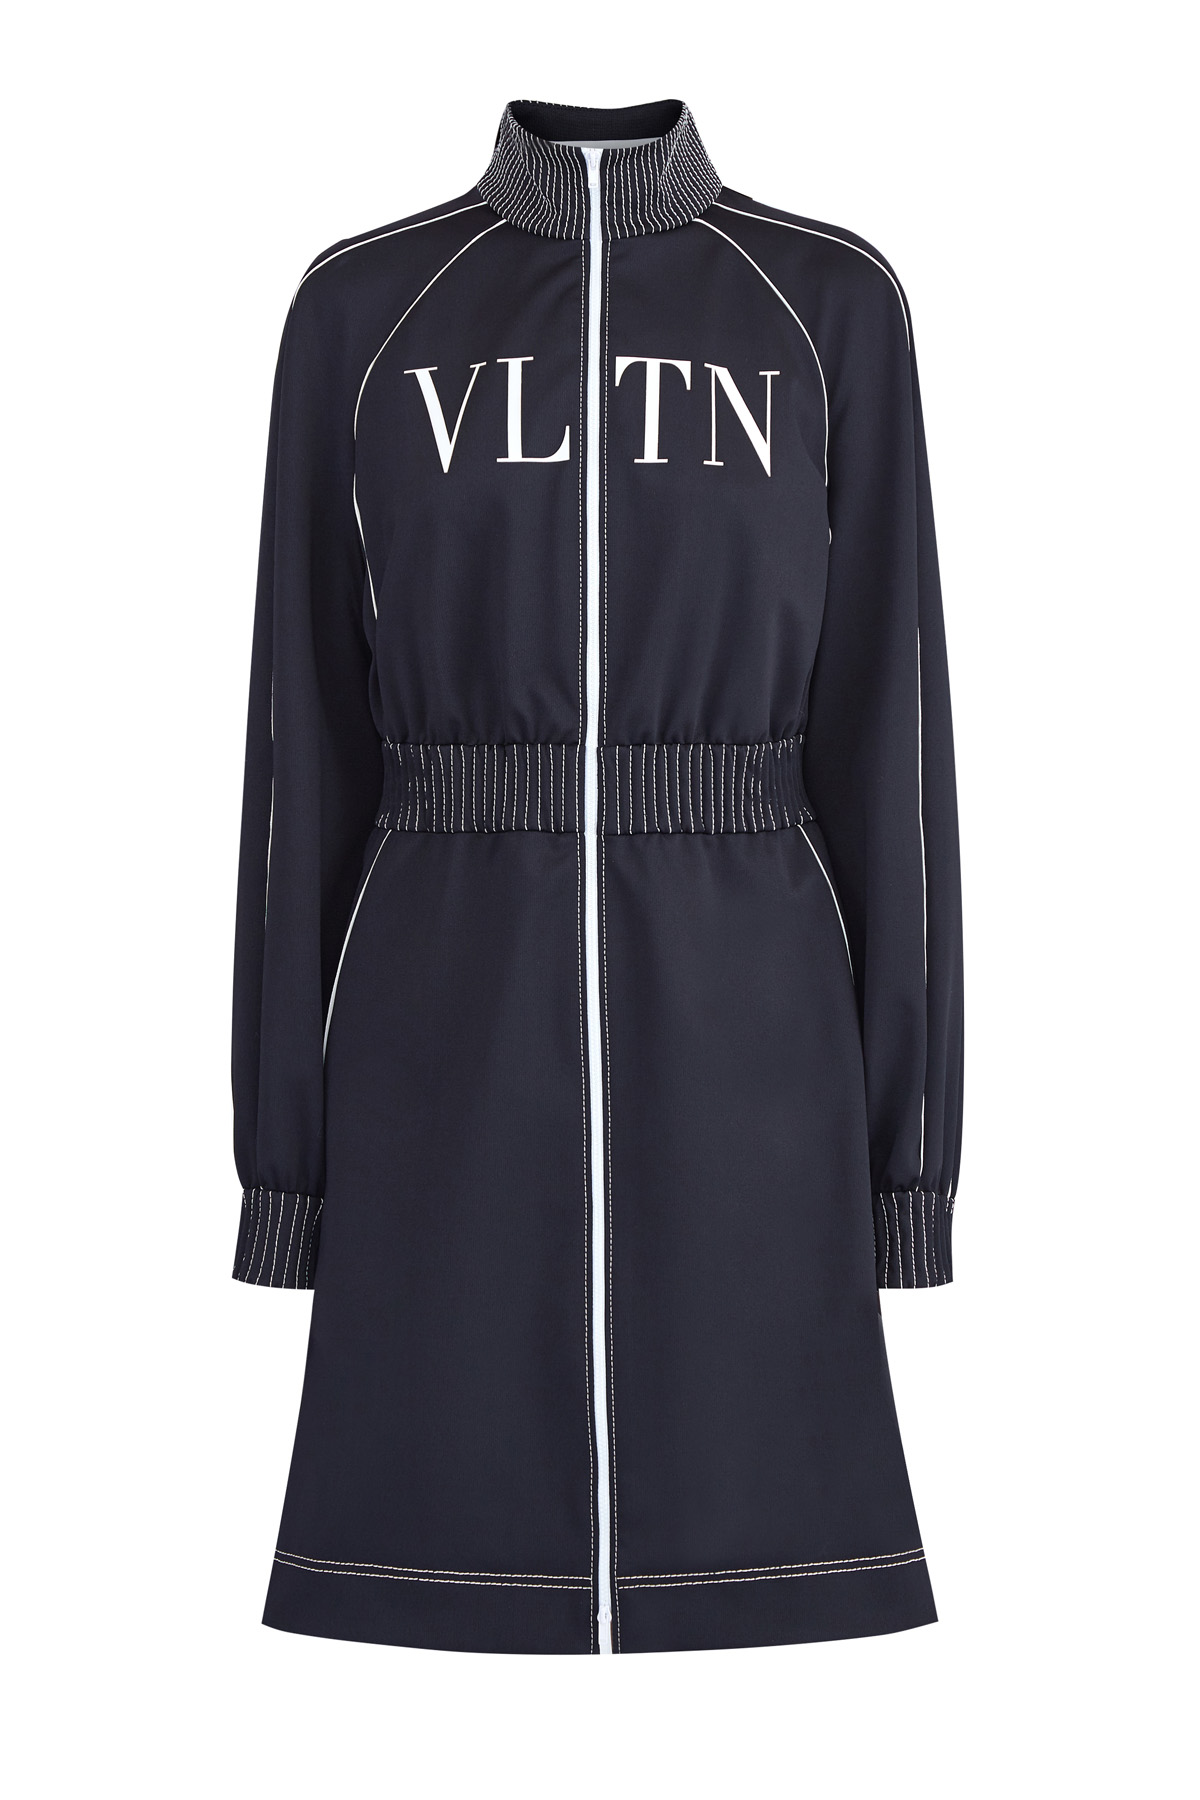 Платье в стиле спортшик с логотипом VLTN и контрастной отделкой VALENTINO, цвет черно-белый, размер 38;40 - фото 1